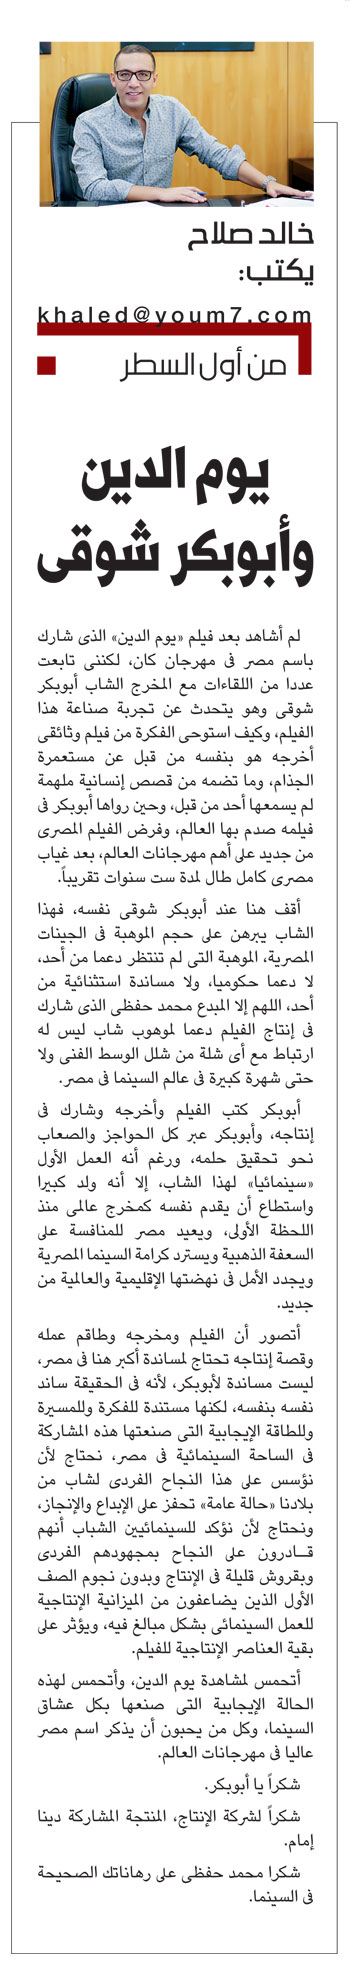 الكاتب الصحفى خالد صلاح